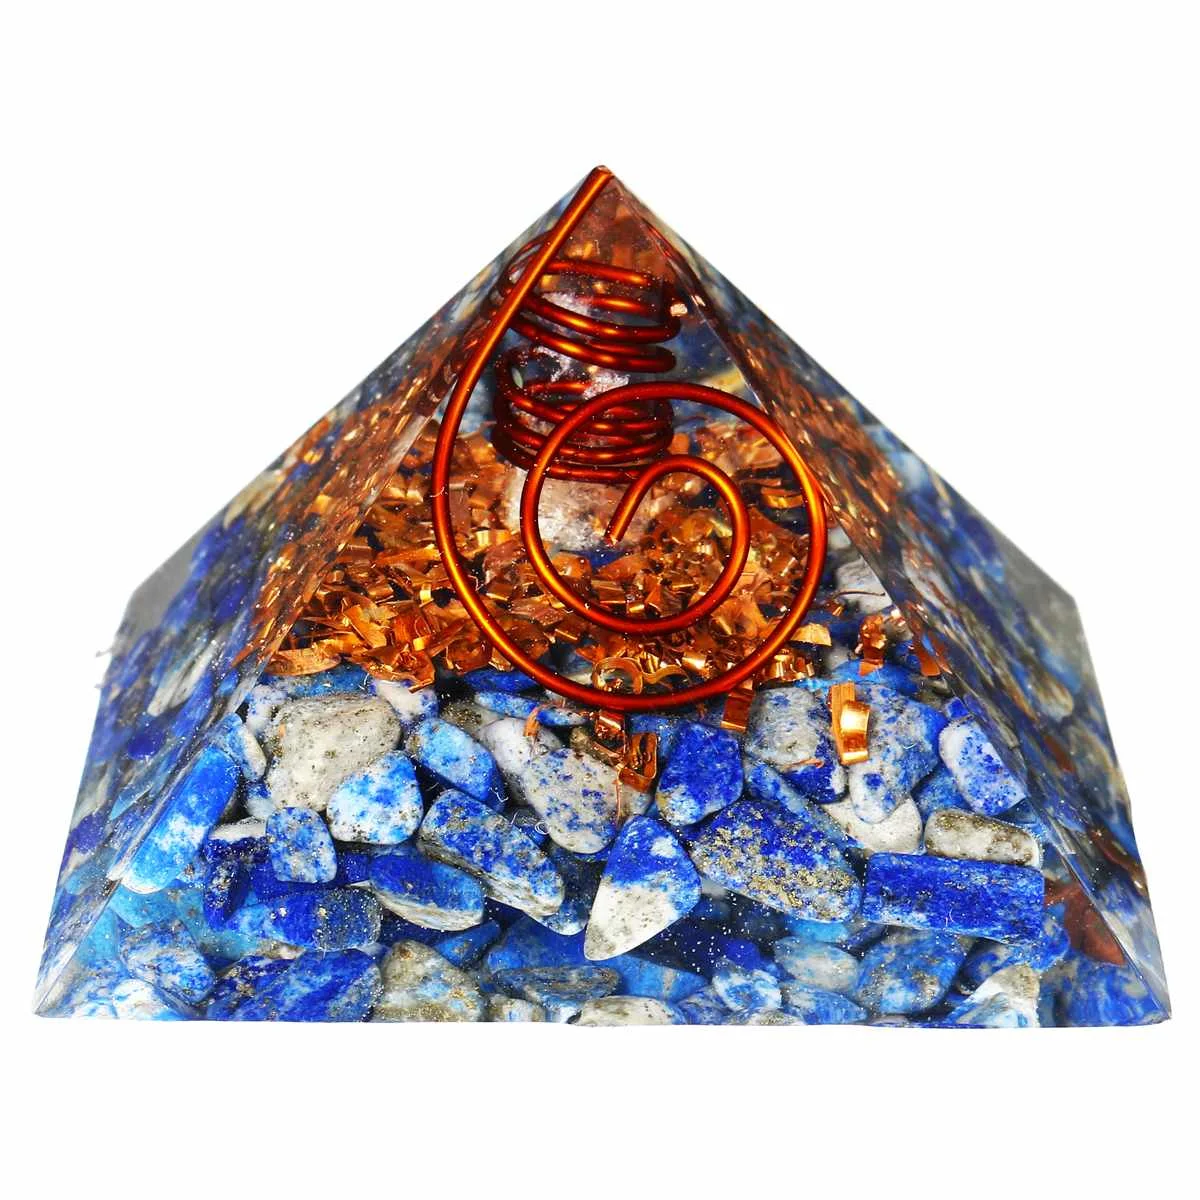 65-75 мм камень фэн-шуй, натуральная пирамида из кристалла кварца, драгоценный камень для йоги, энергетический лечебный камень, украшение для дома и сада, новинка